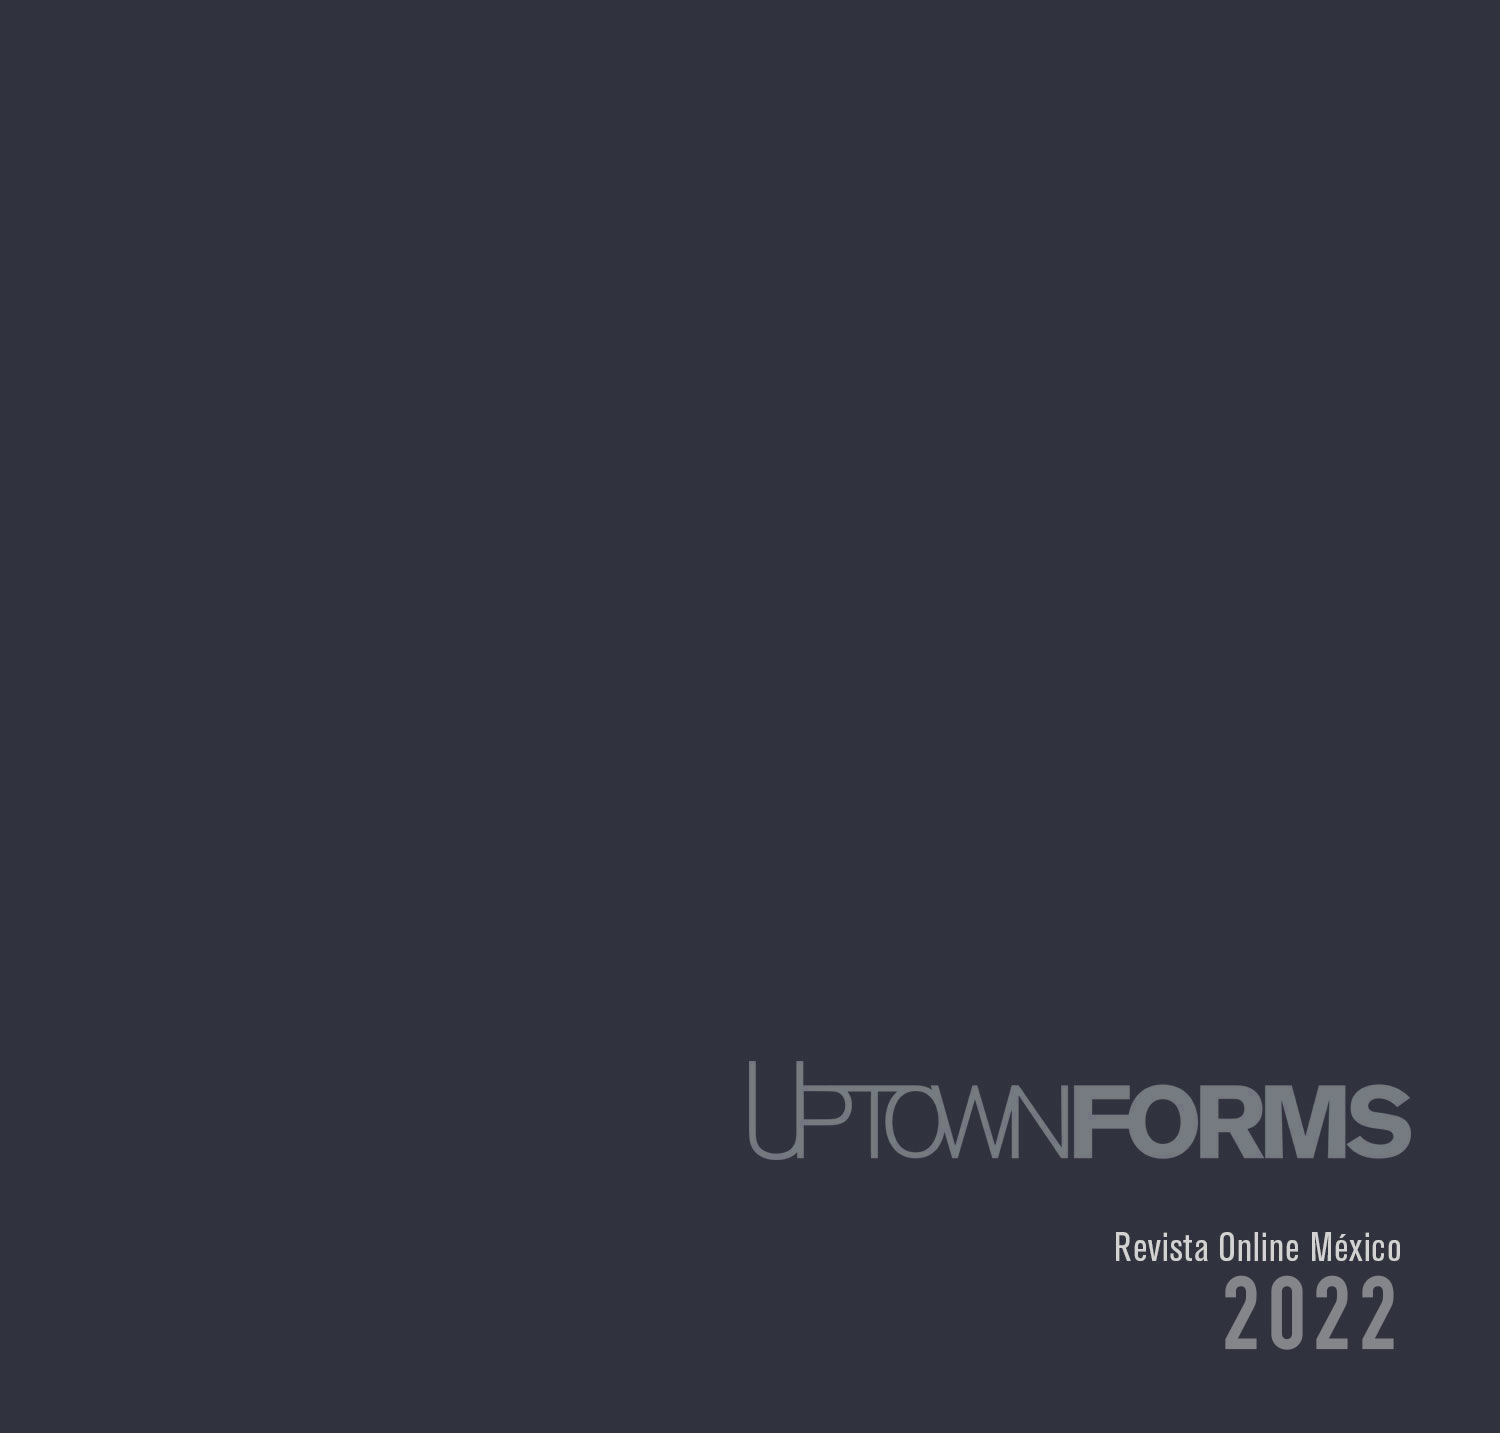 UpTown Forms revista Online